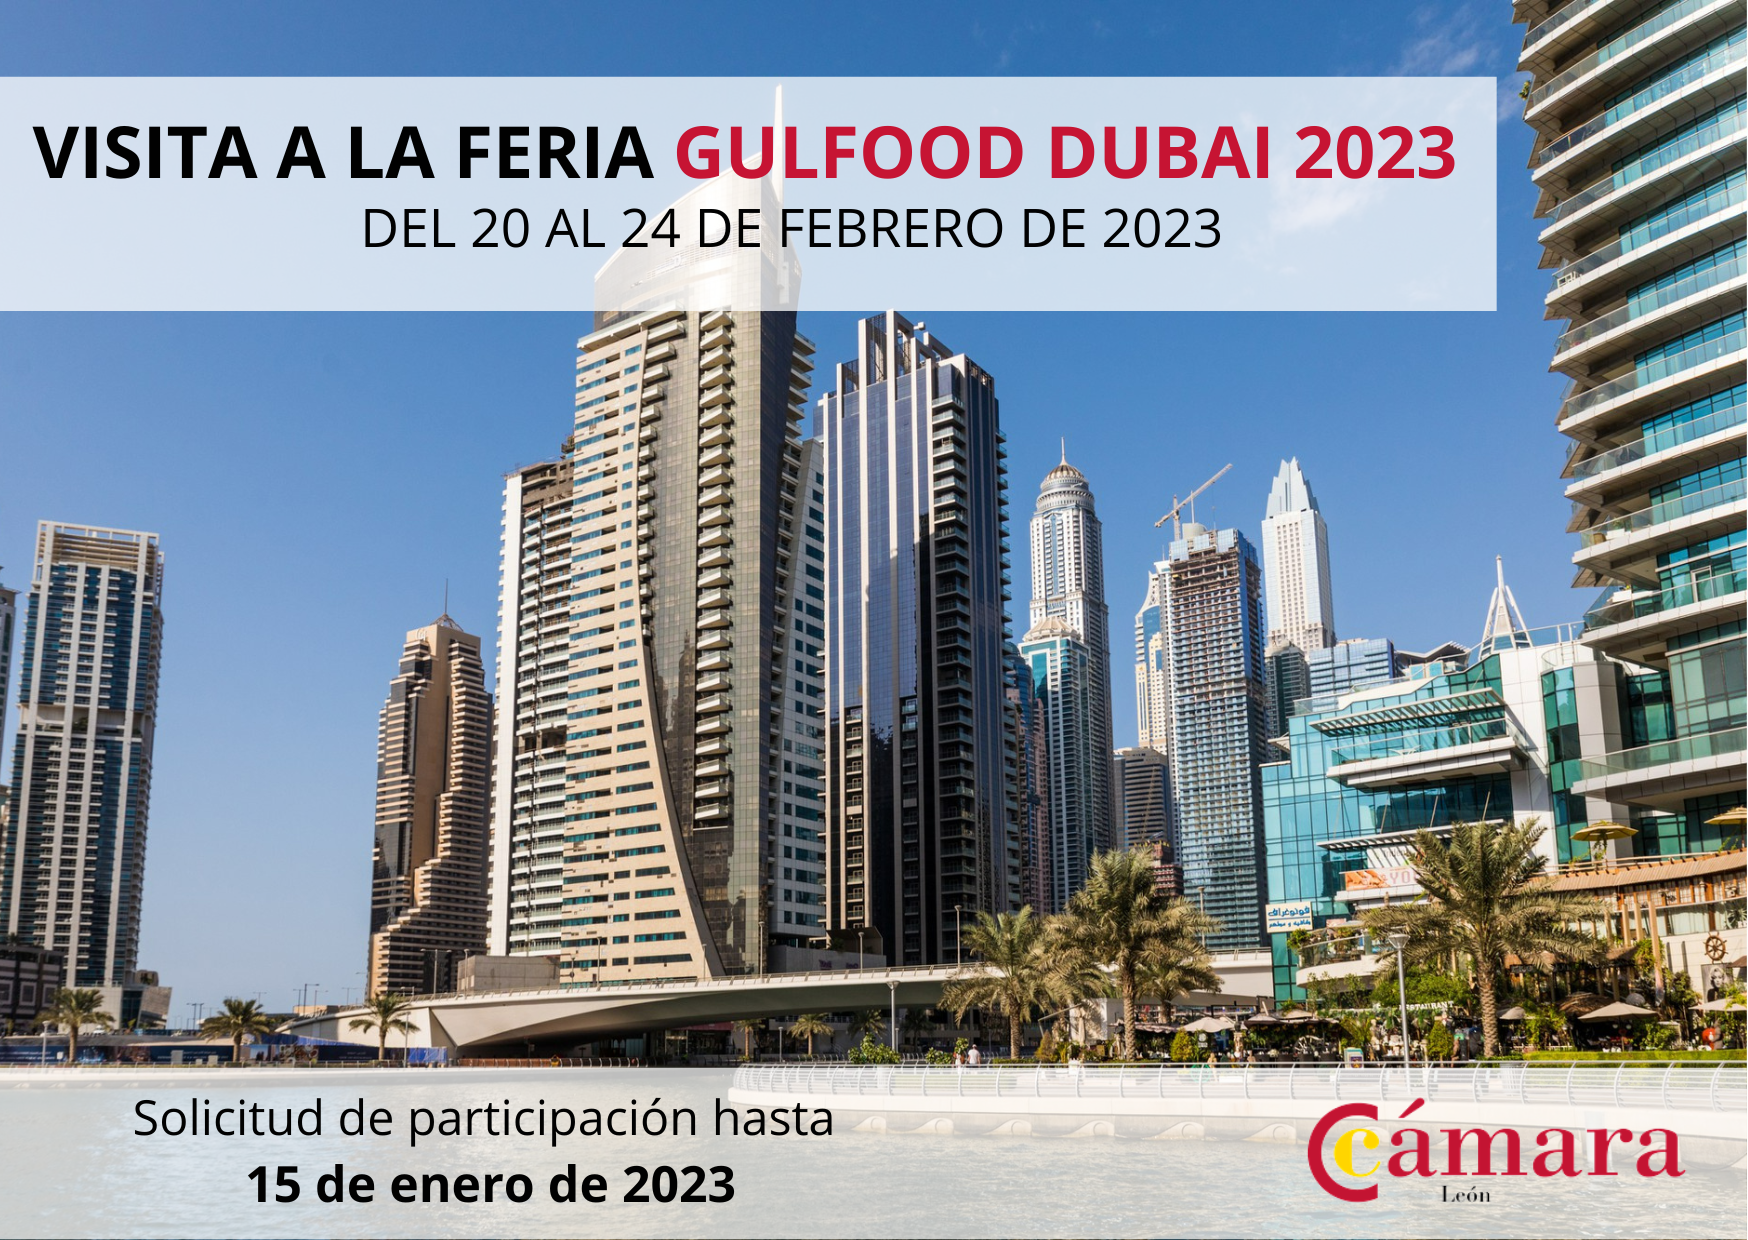 VISITA A LA FERIA GULFOOD DUBAI 2023